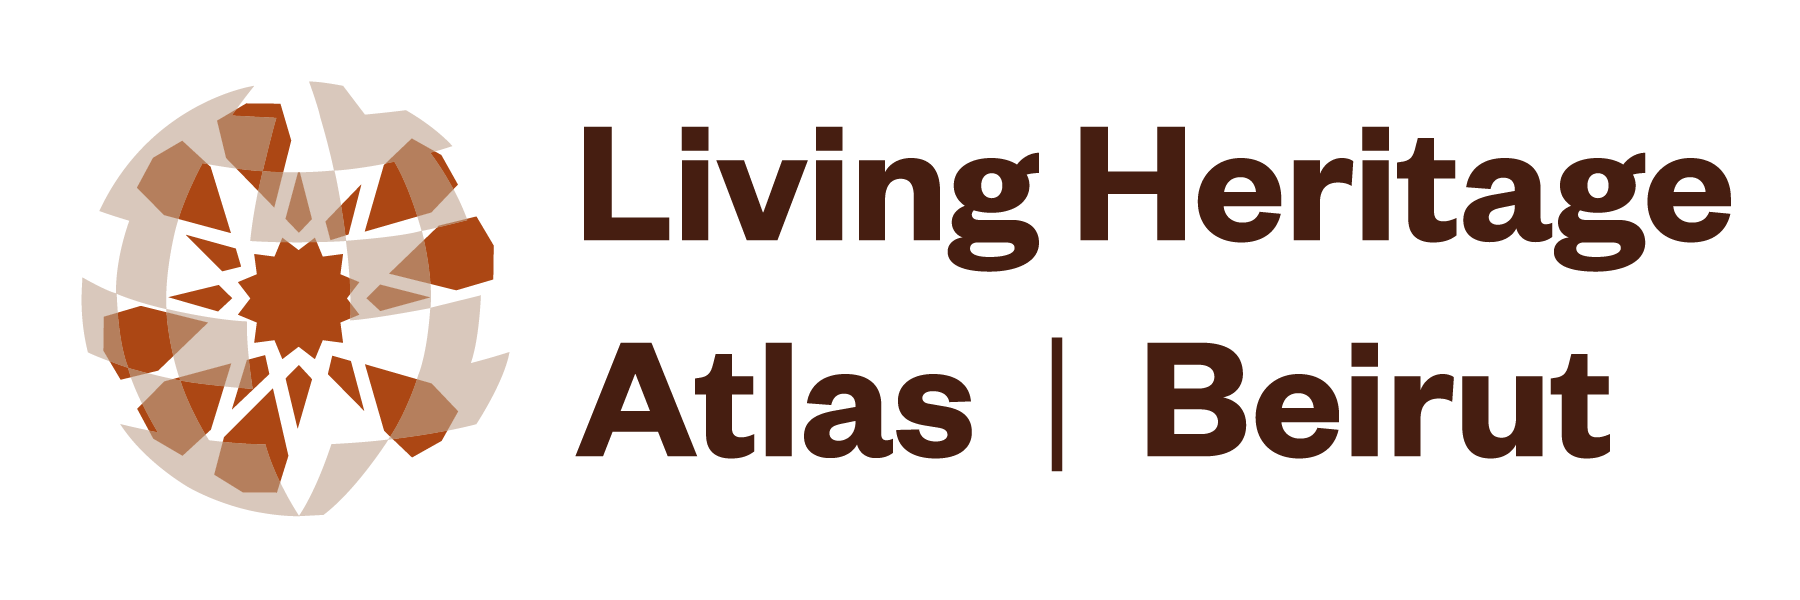 Living Heritage Atlas | Beirut logo